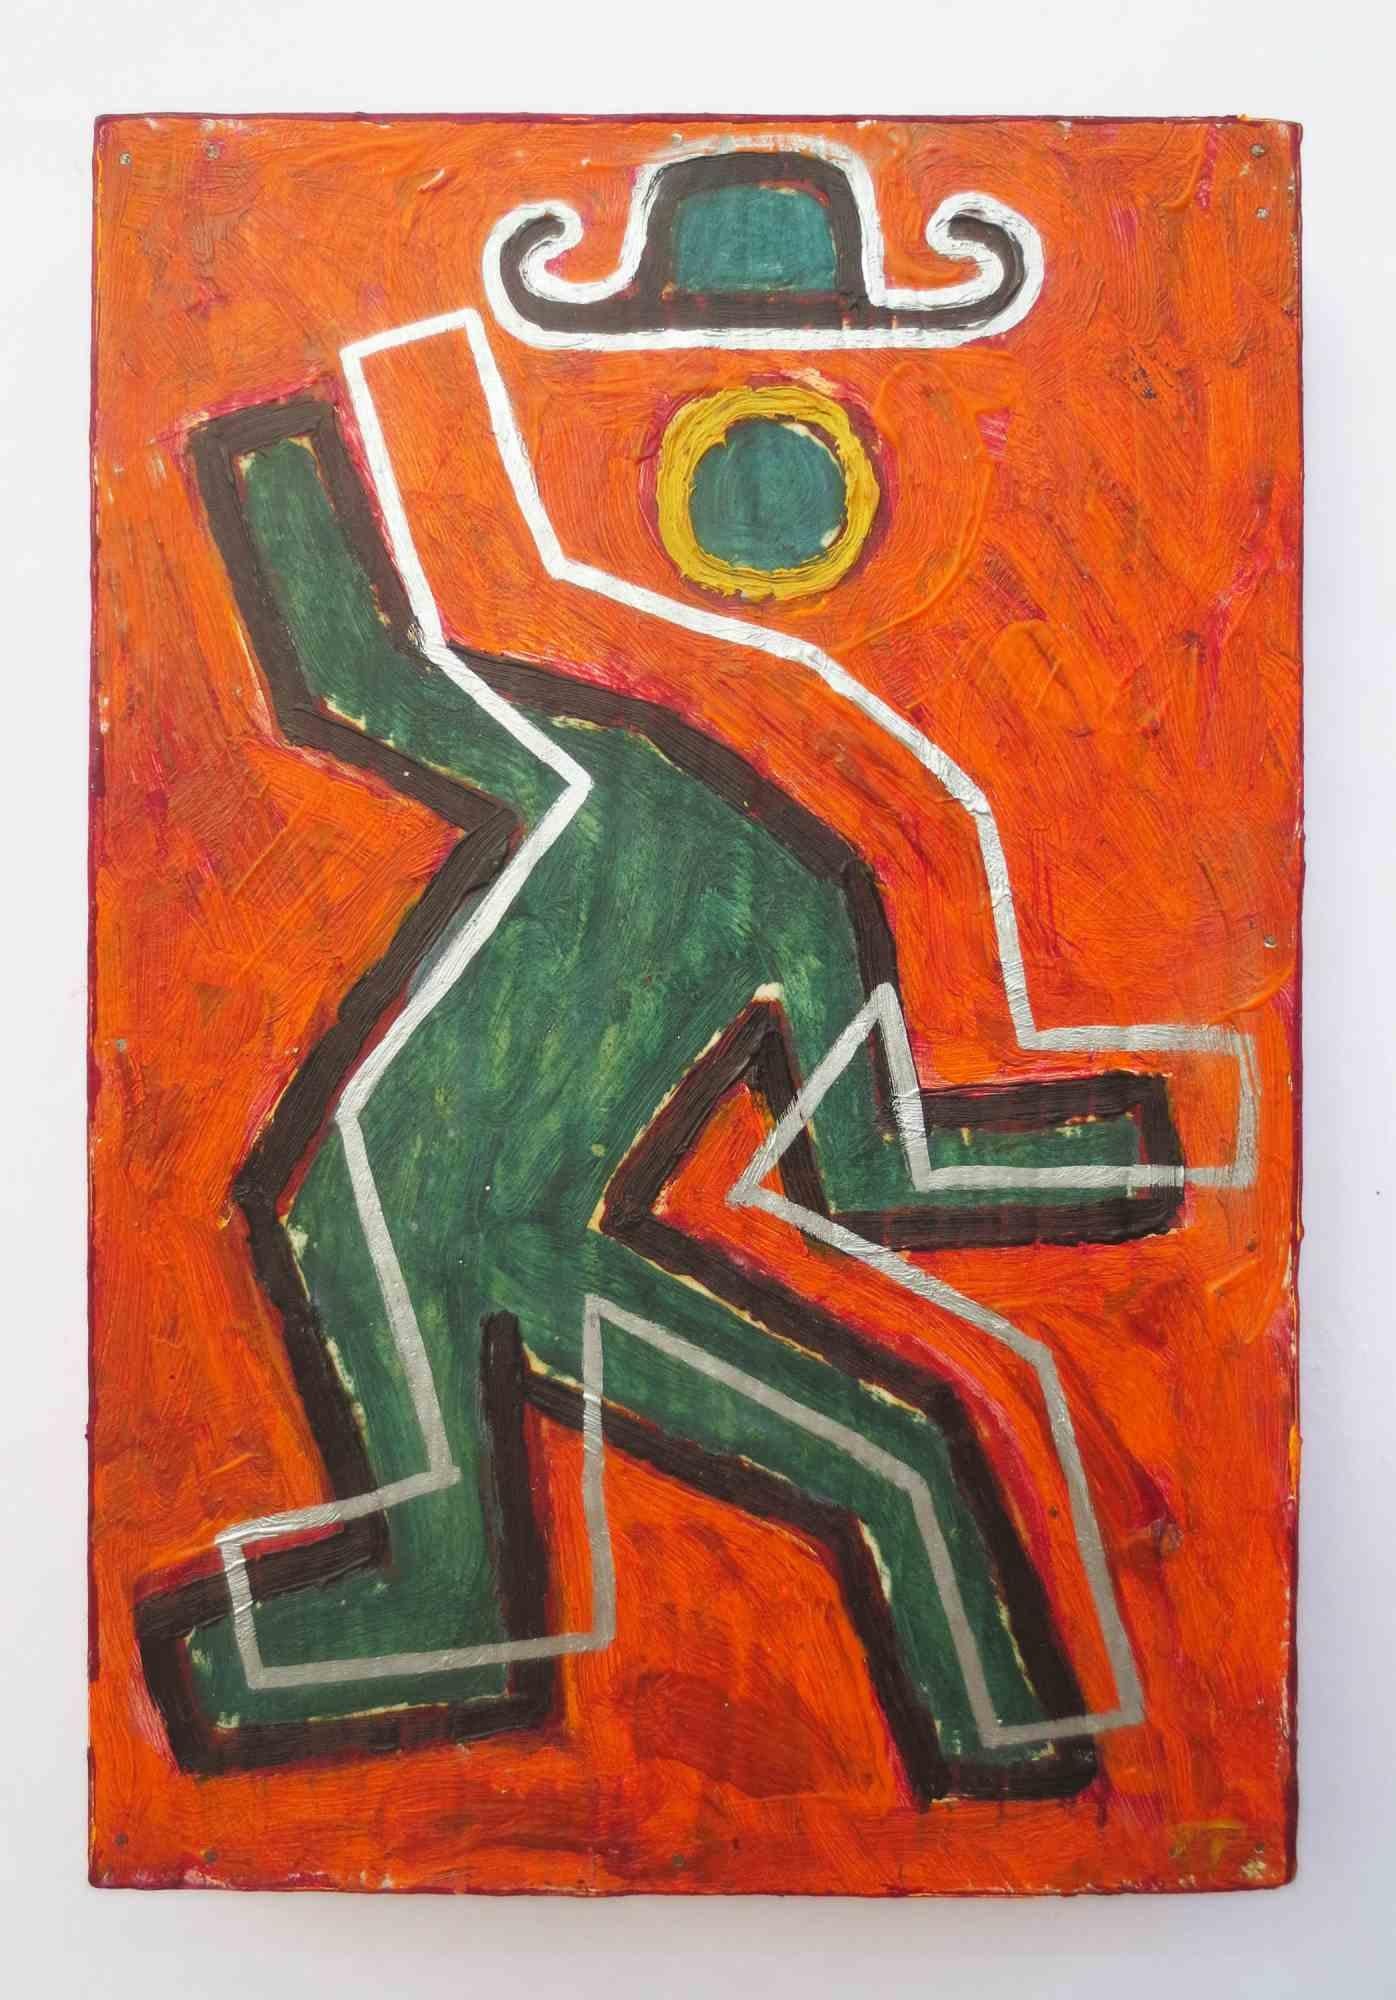 Disequilibrio - Peinture à l'huile de Salvatore Travascio - 2003